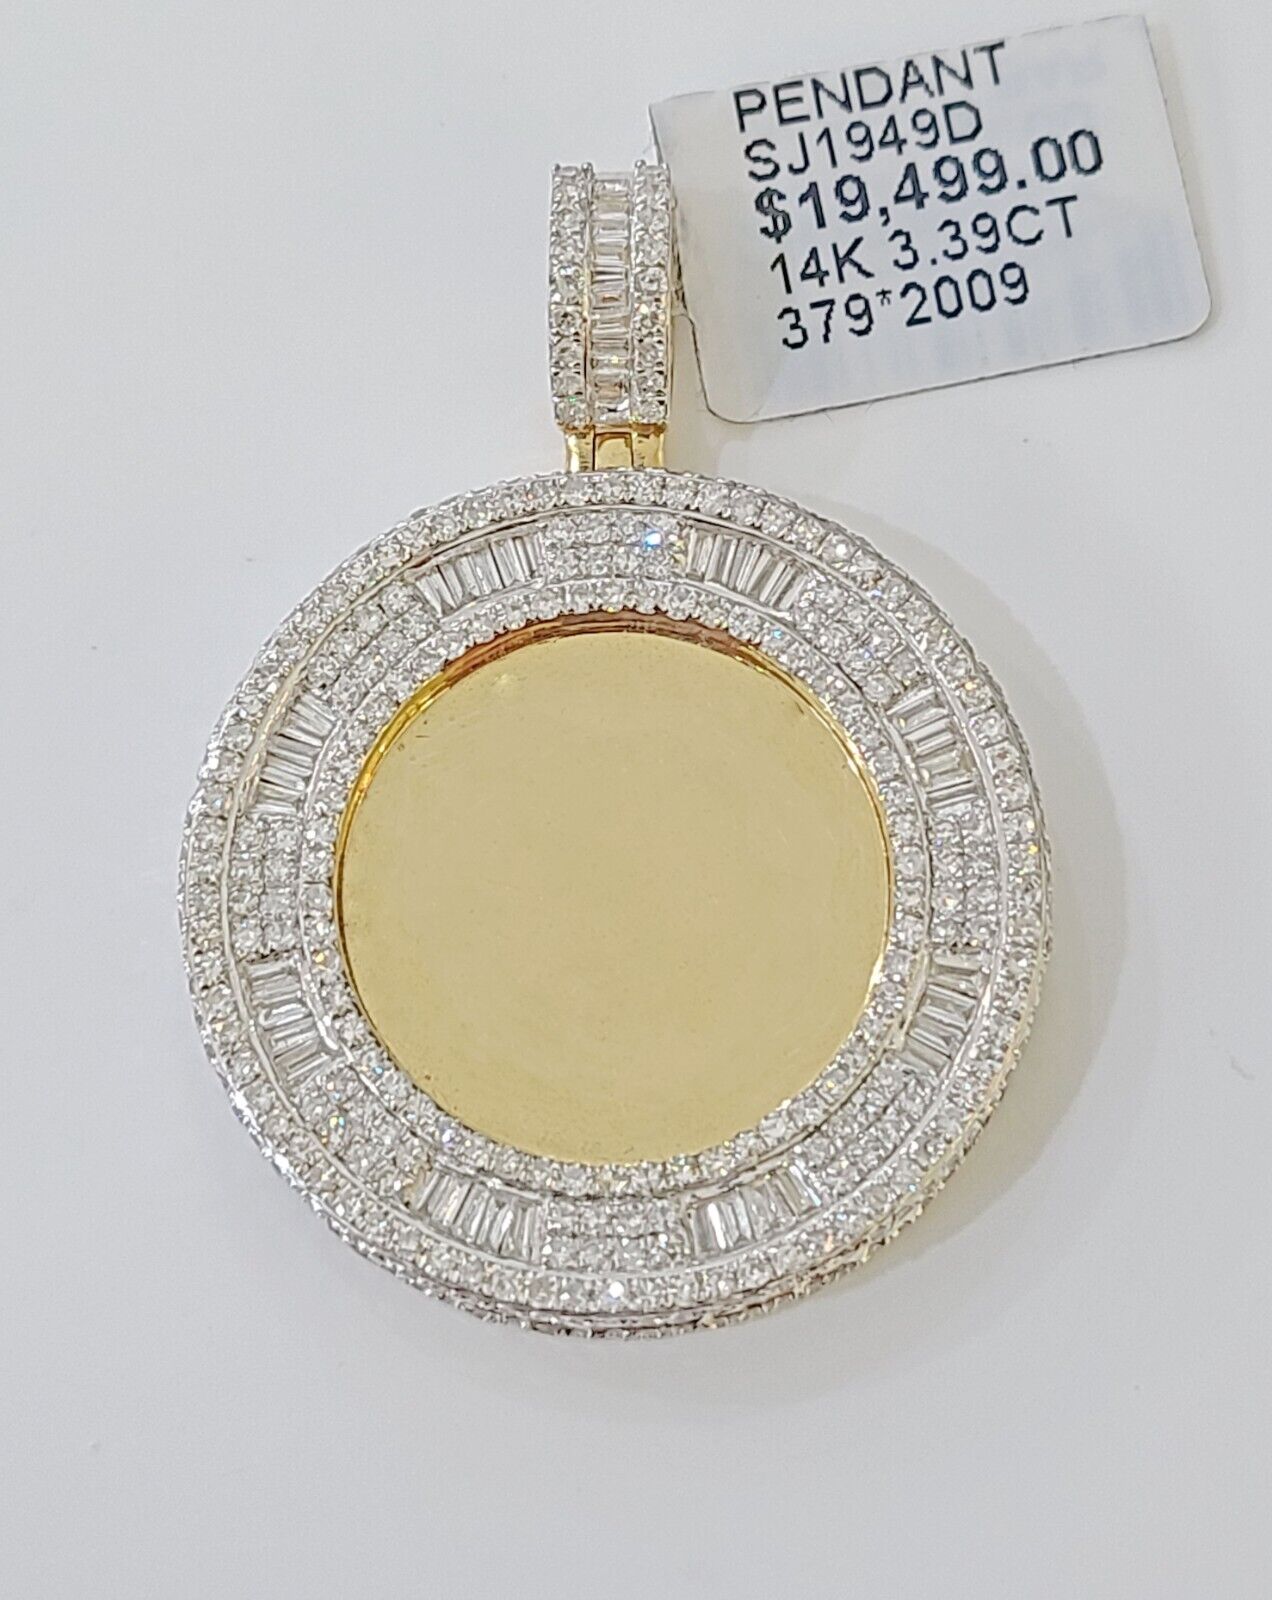 14k Real Yellow Gold And Diamond Circular Charm / Pendant 3.39CT